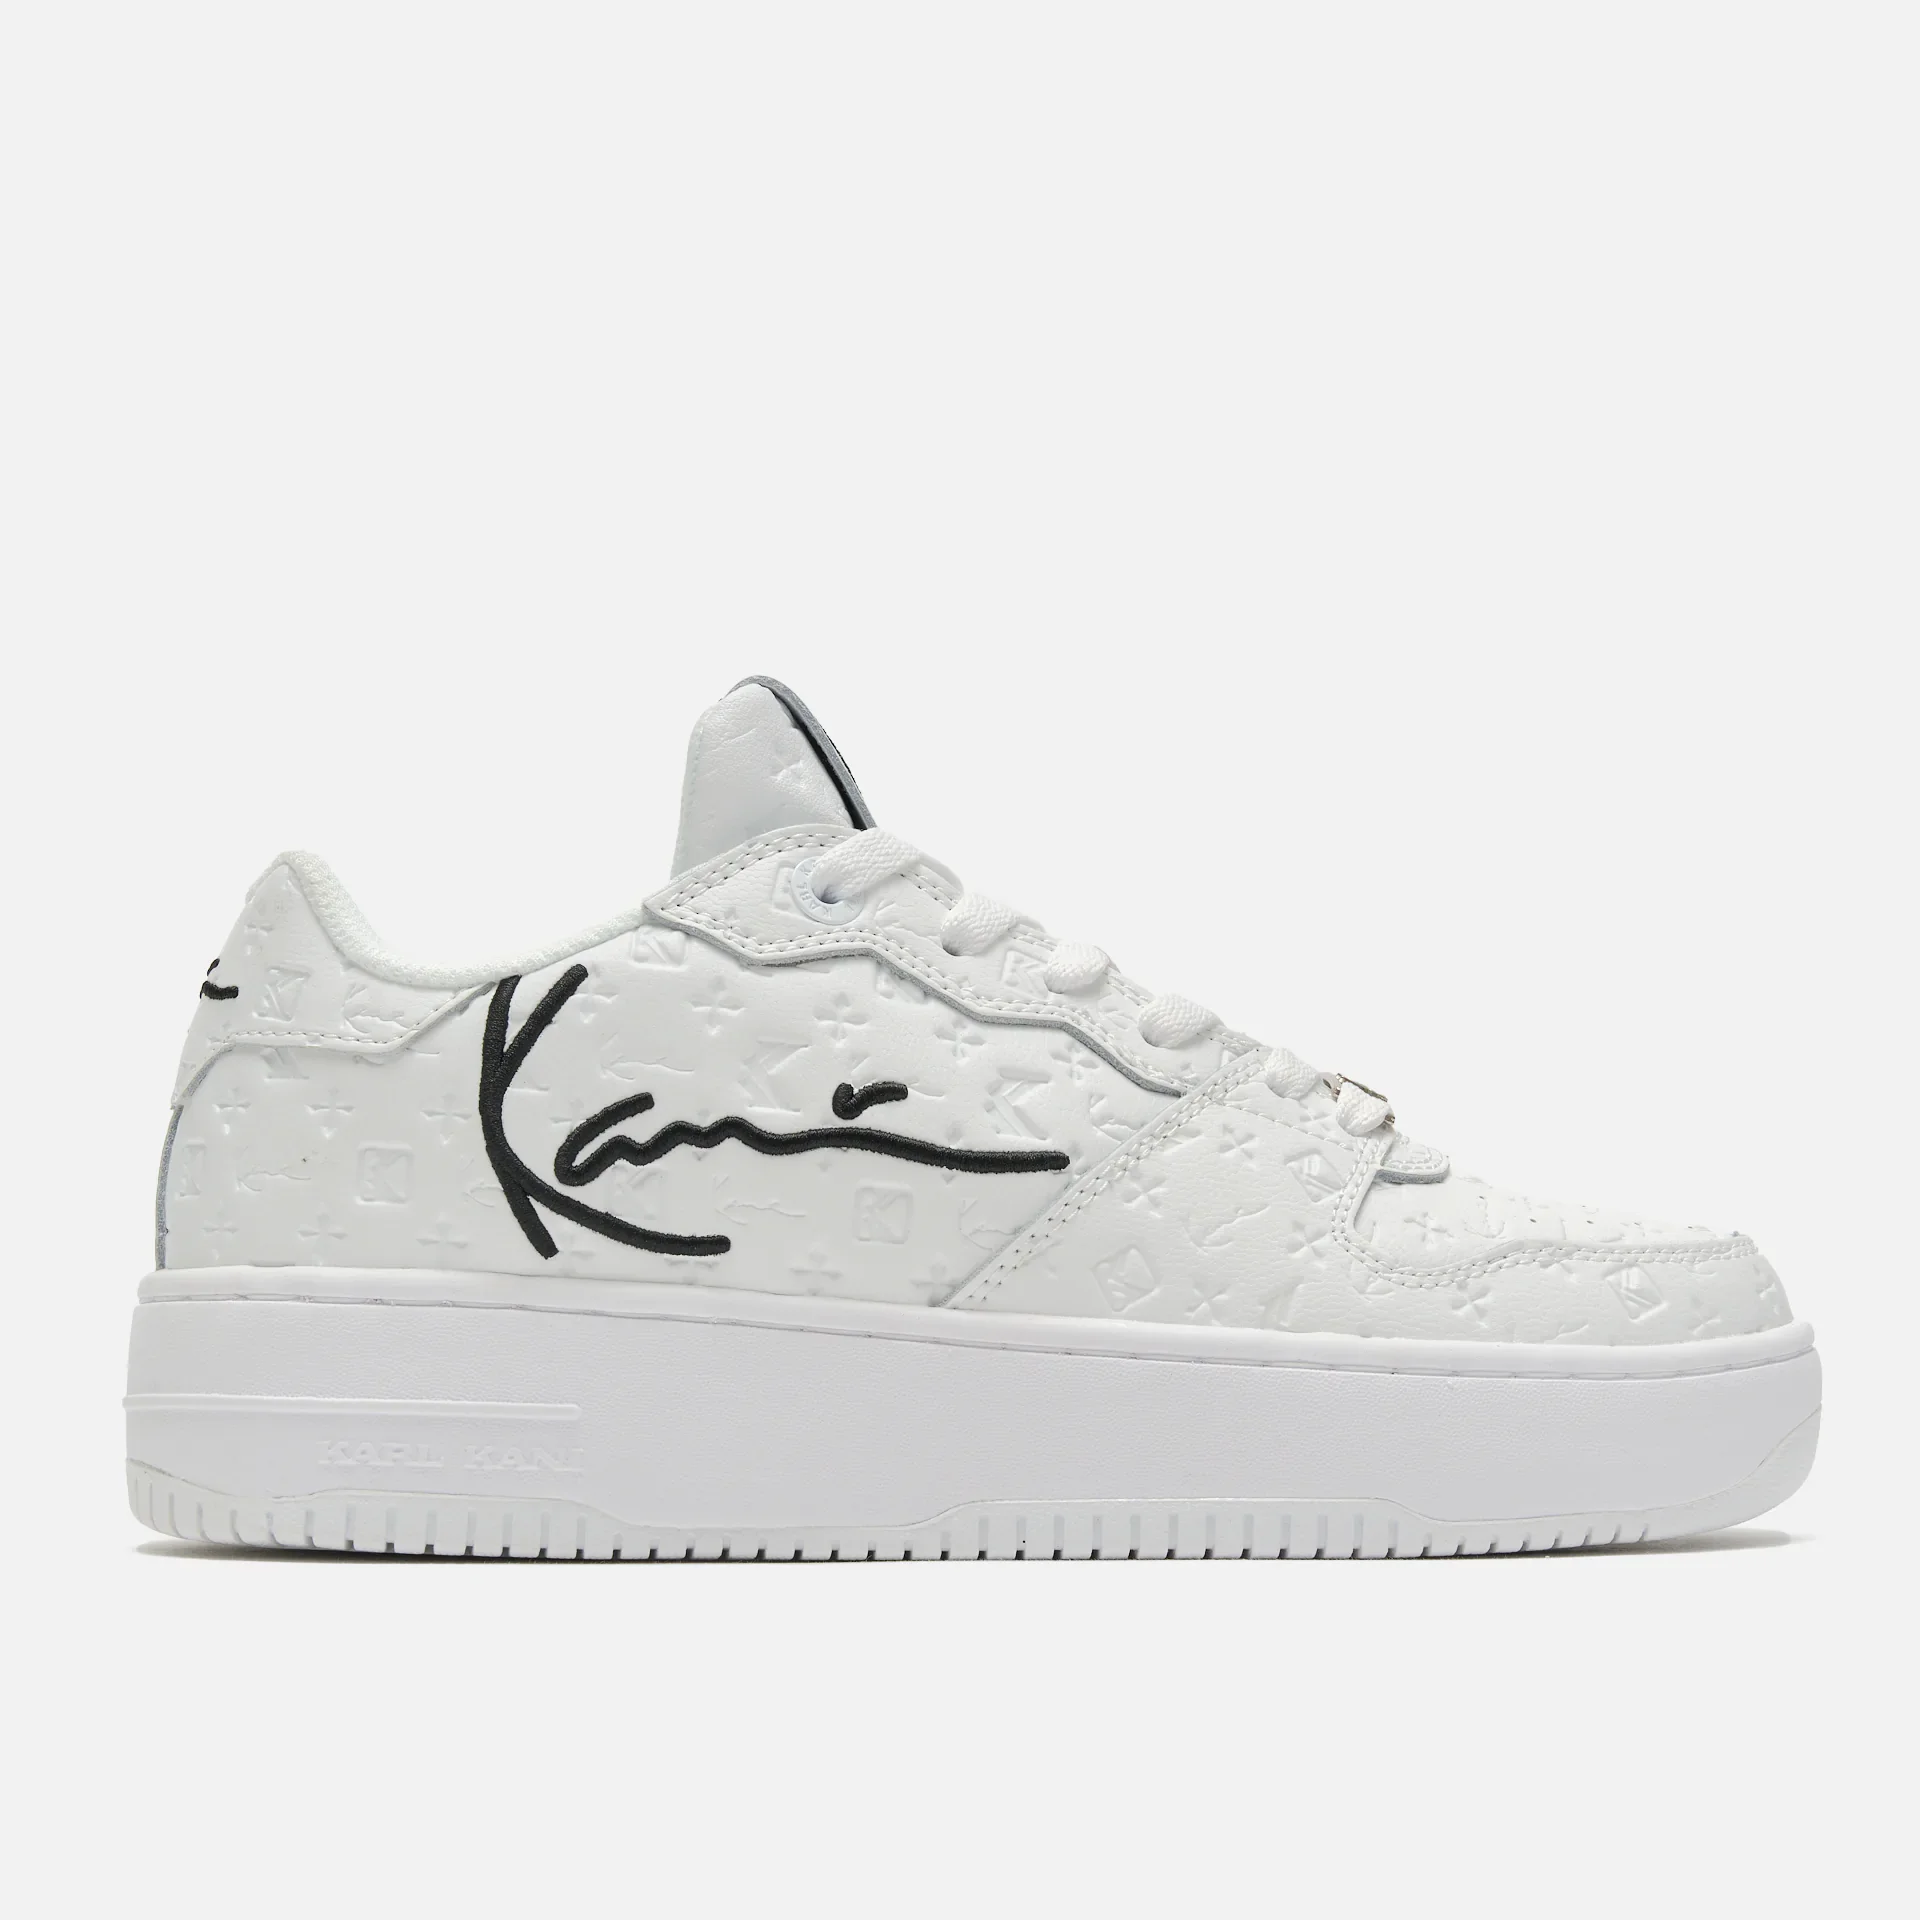 Karl Kani 89 Up Logo Premium Sneakers White/Black